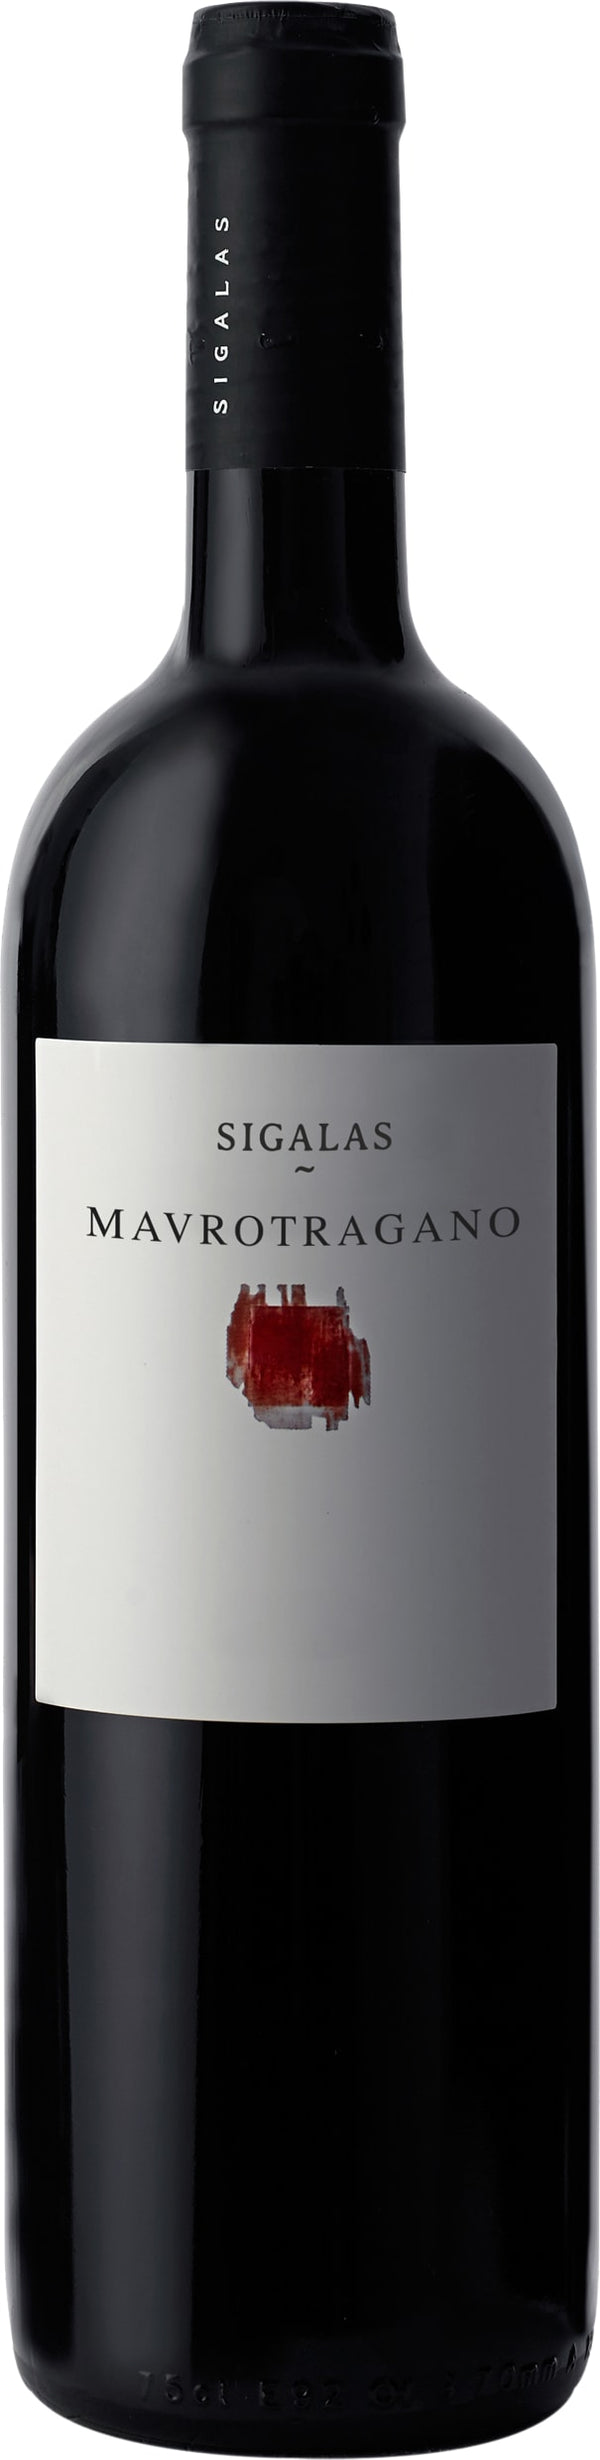 Sigalas Mavrotragano 2021 6x75cl - Just Wines 